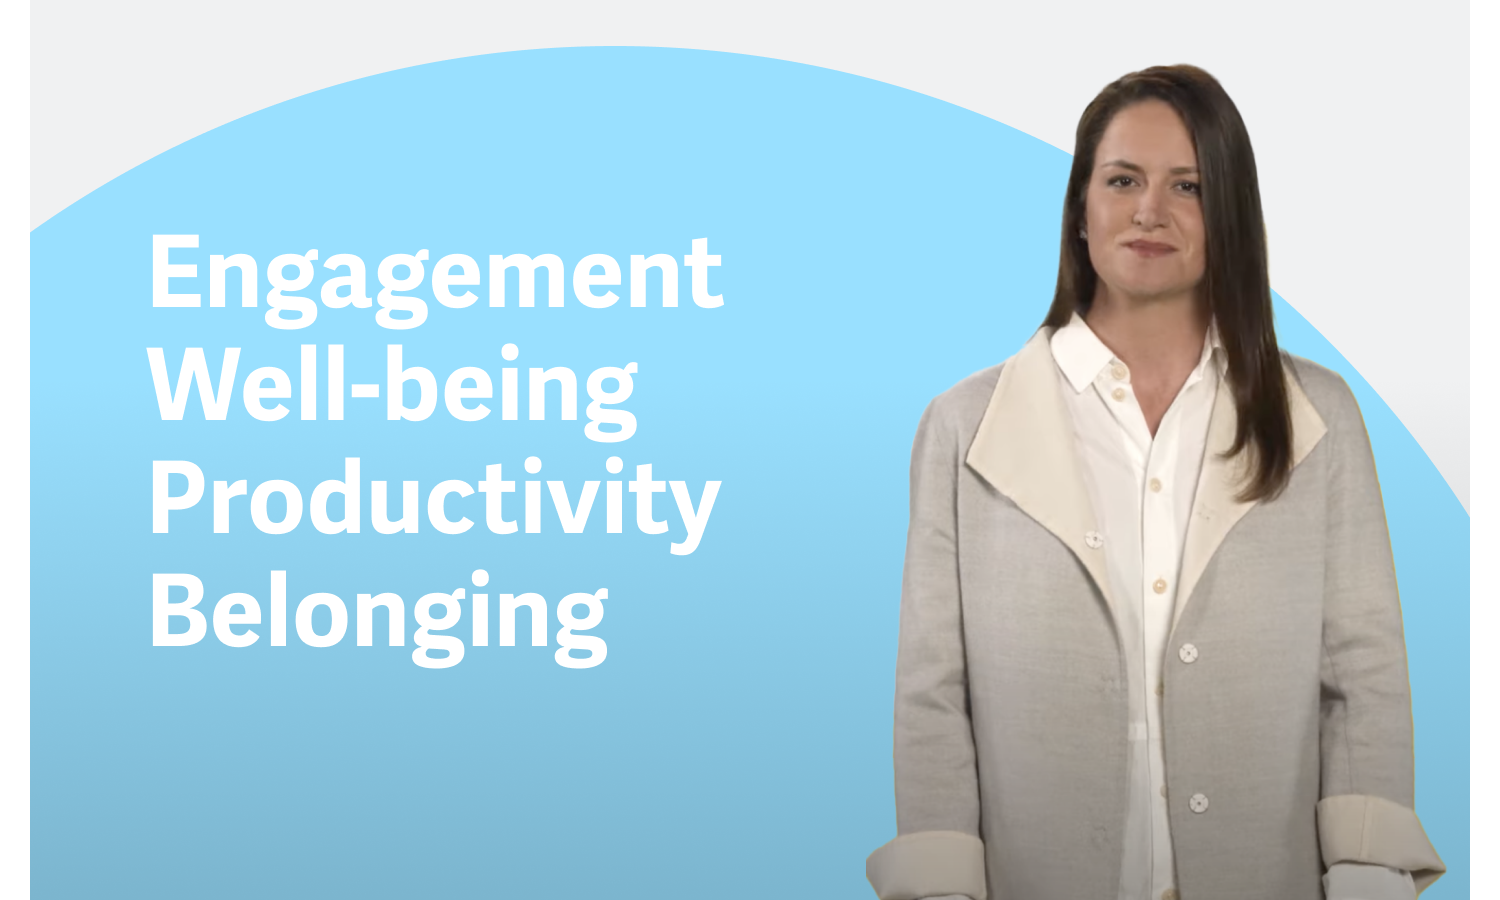 Bekijk de video 'Workday's visie voor Employee Experience Management'.